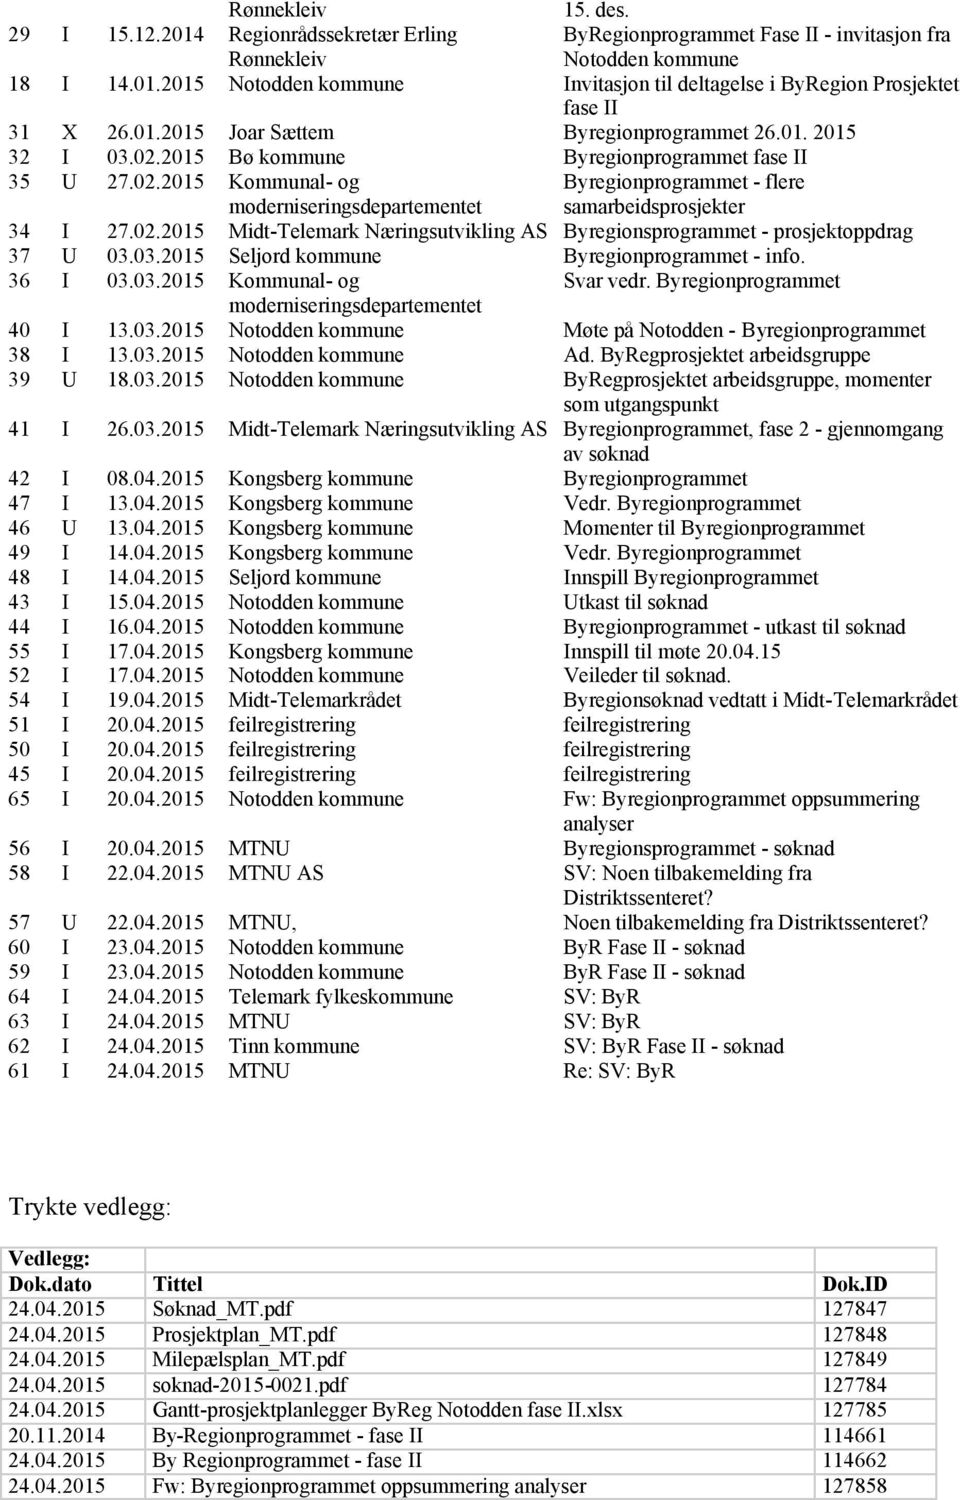 02.2015 Midt-Telemark Næringsutvikling AS Byregionsprogrammet - prosjektoppdrag 37 U 03.03.2015 Seljord kommune Byregionprogrammet - info. 36 I 03.03.2015 Kommunal- og Svar vedr.